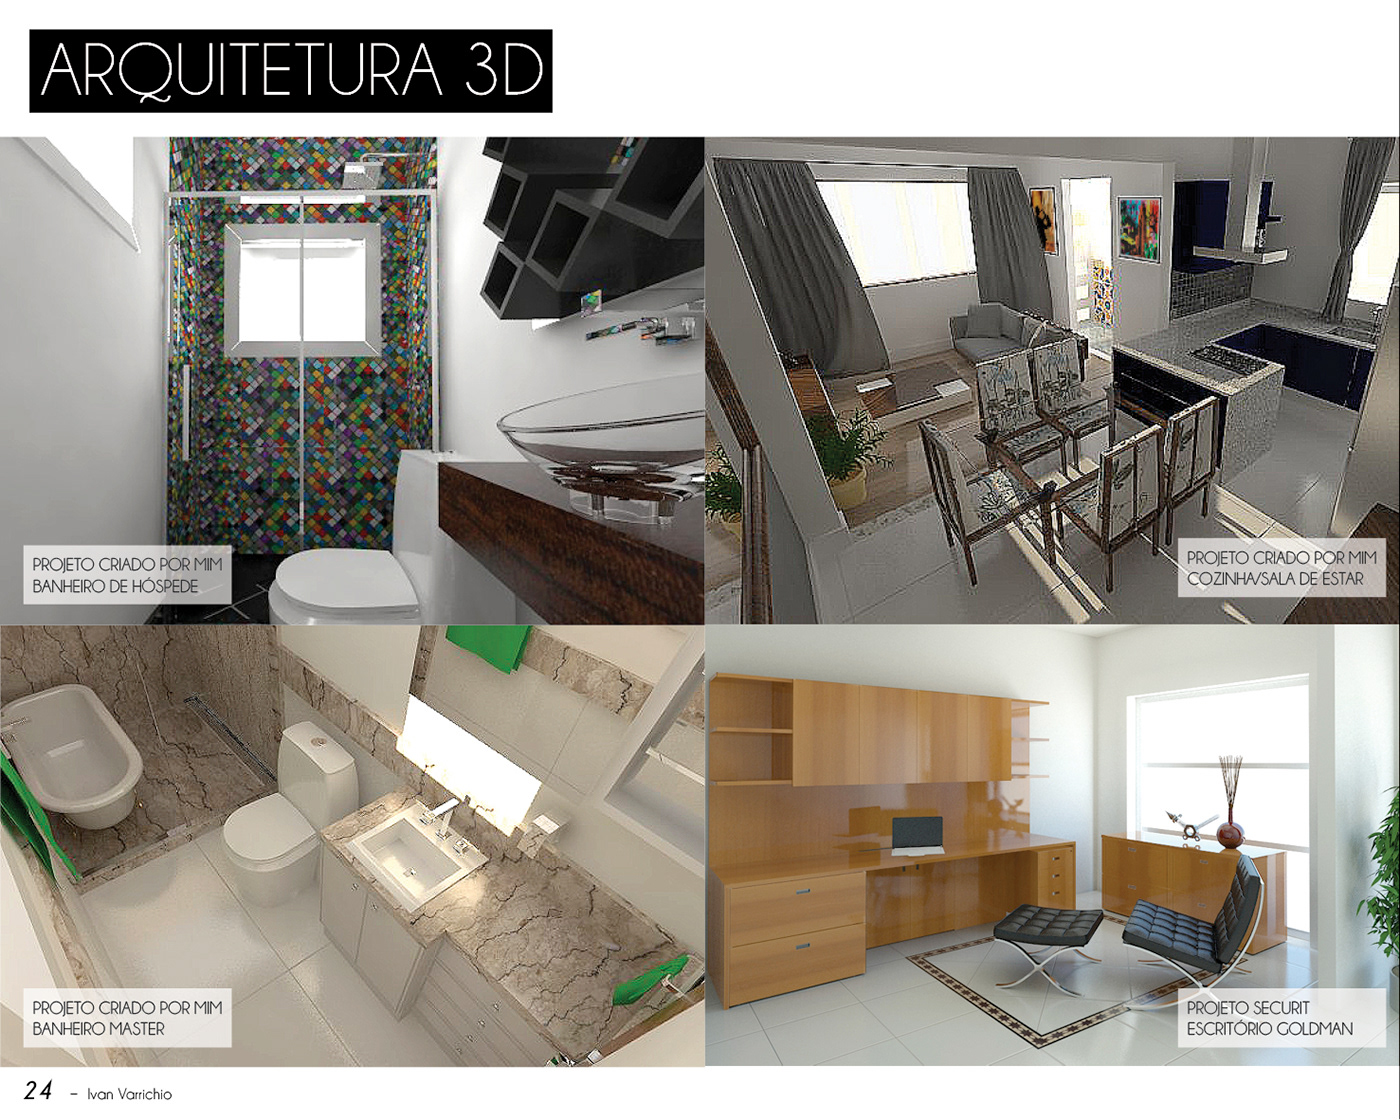 design graphic design  presentation curriculum CV portfolio personal architecture 3D Render